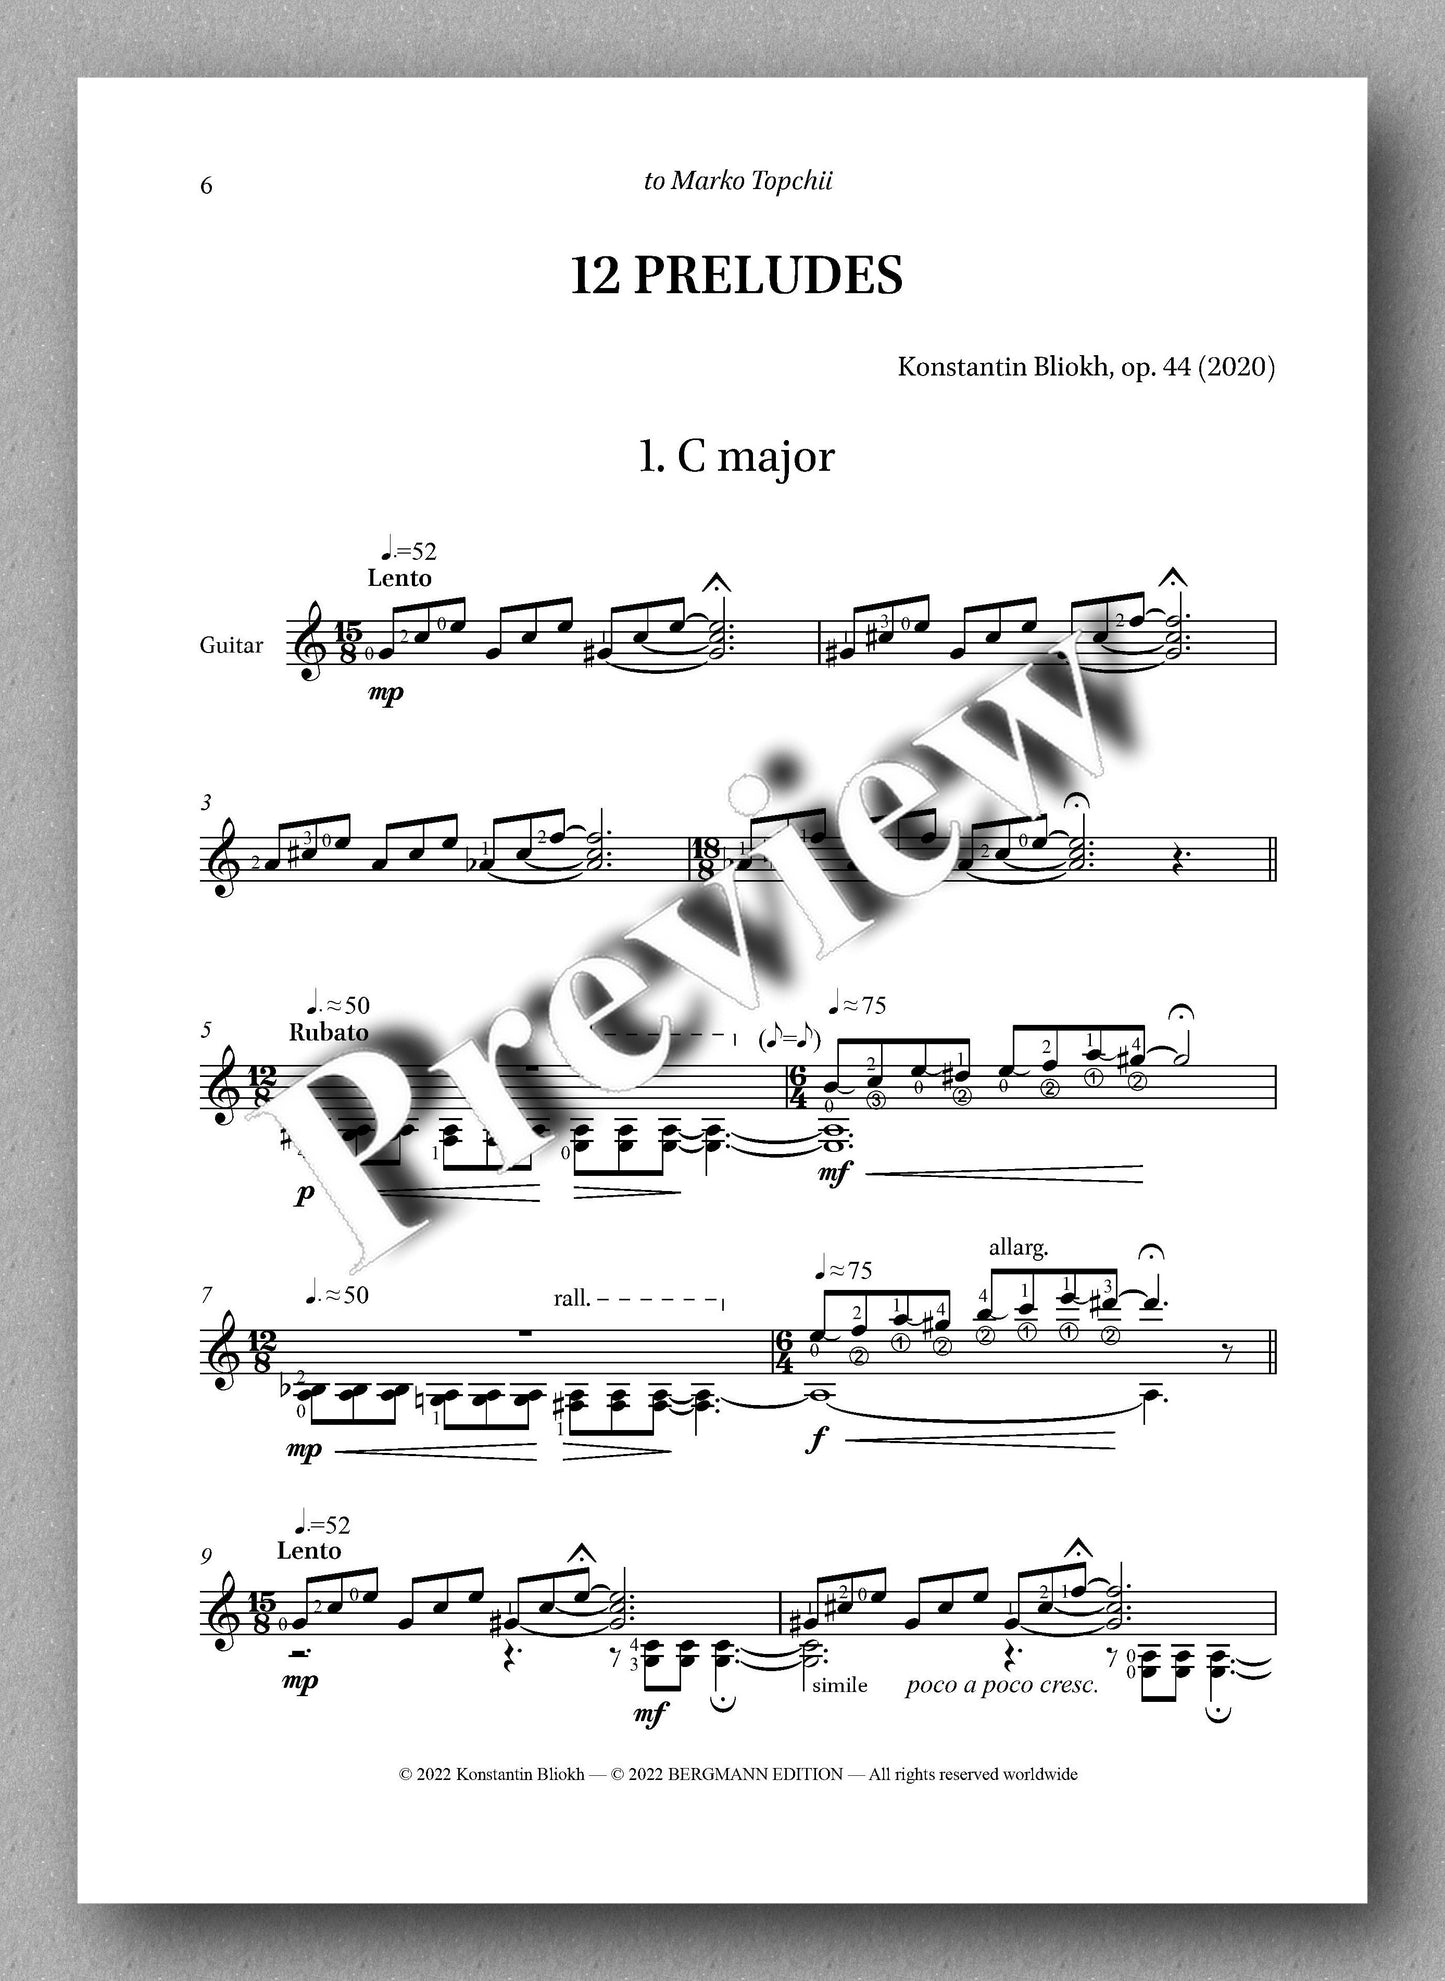 Bliokh, 12 Preludes - Prelude 1